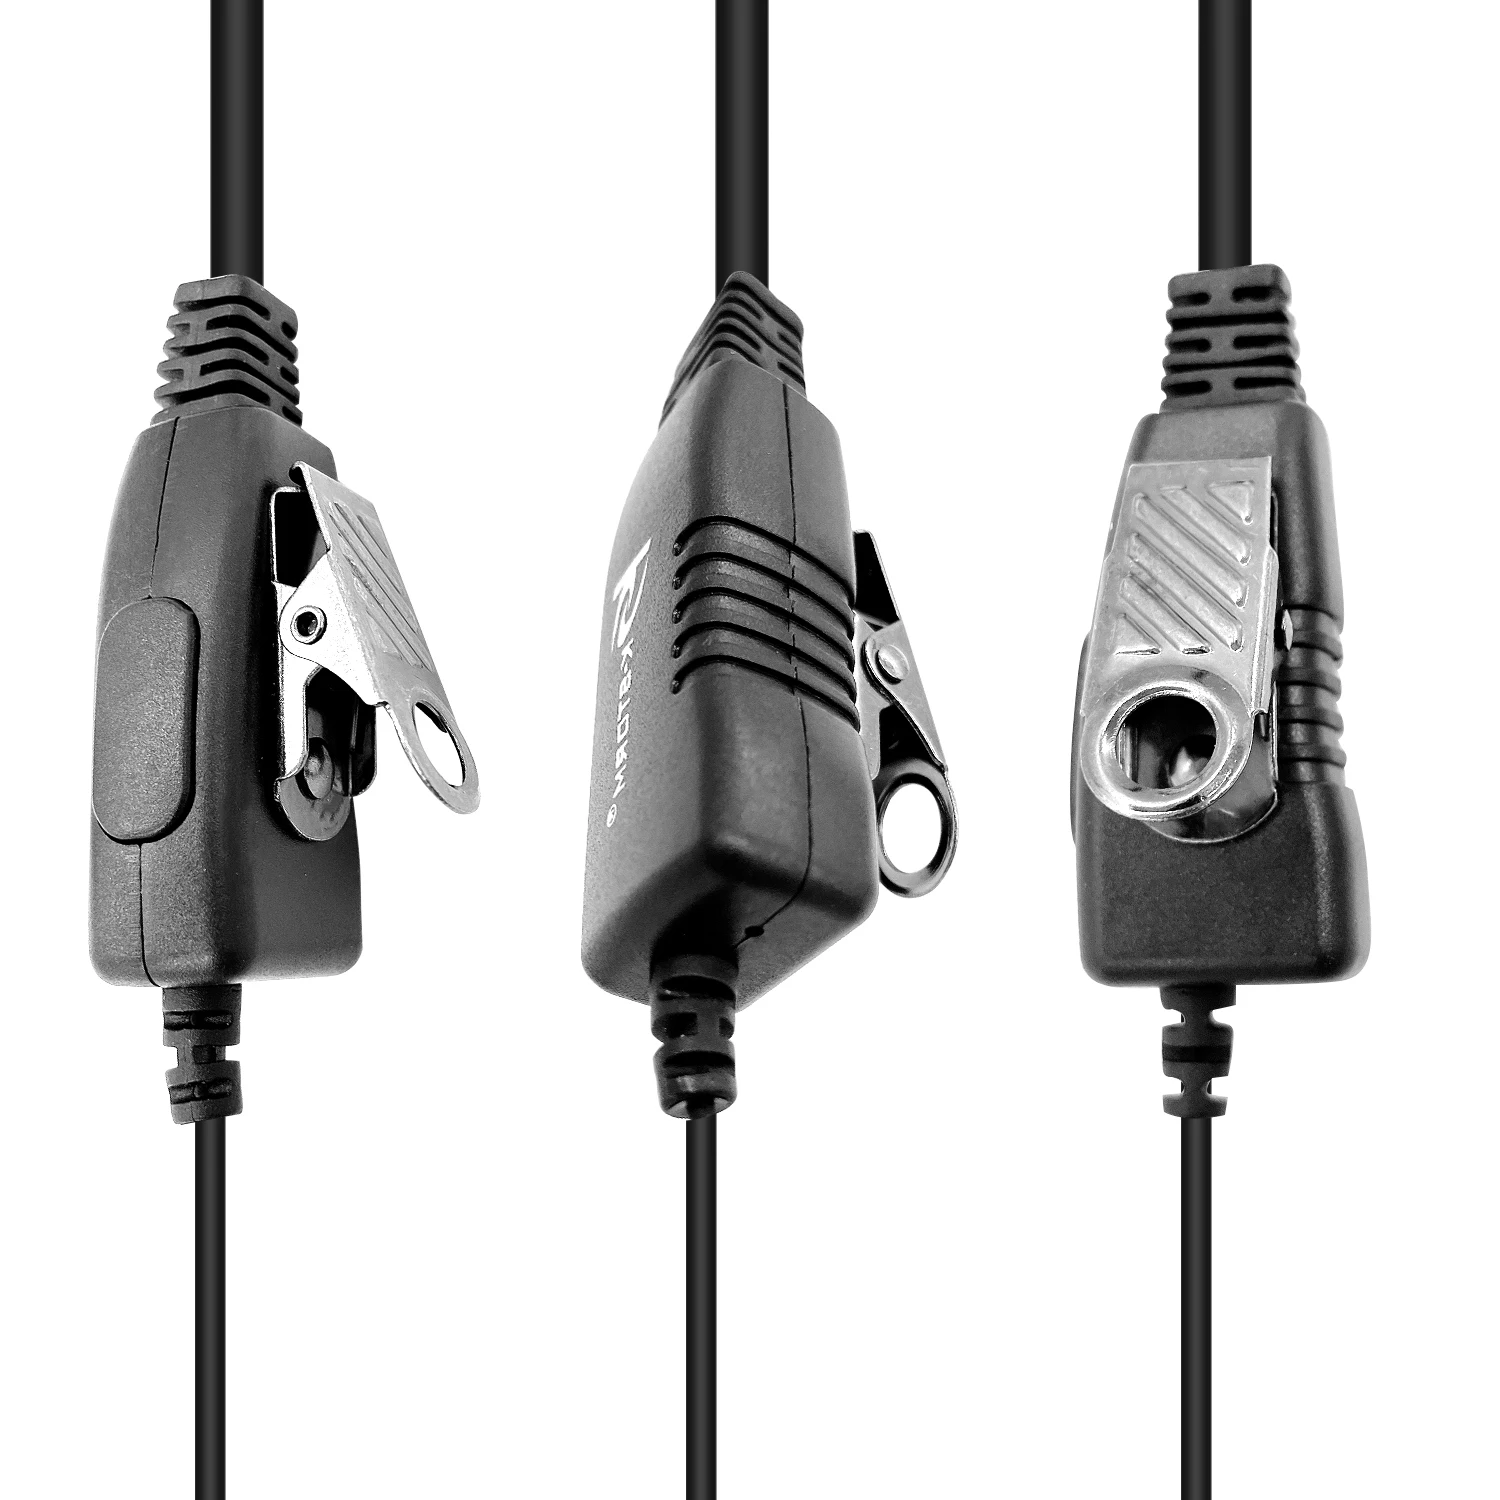 Type G ears hang walkie talkie headset Earpiece for YEASU VX-1/1R,VX-2/2R,VX-3/3R,VX-5/5R two way radios enlarge